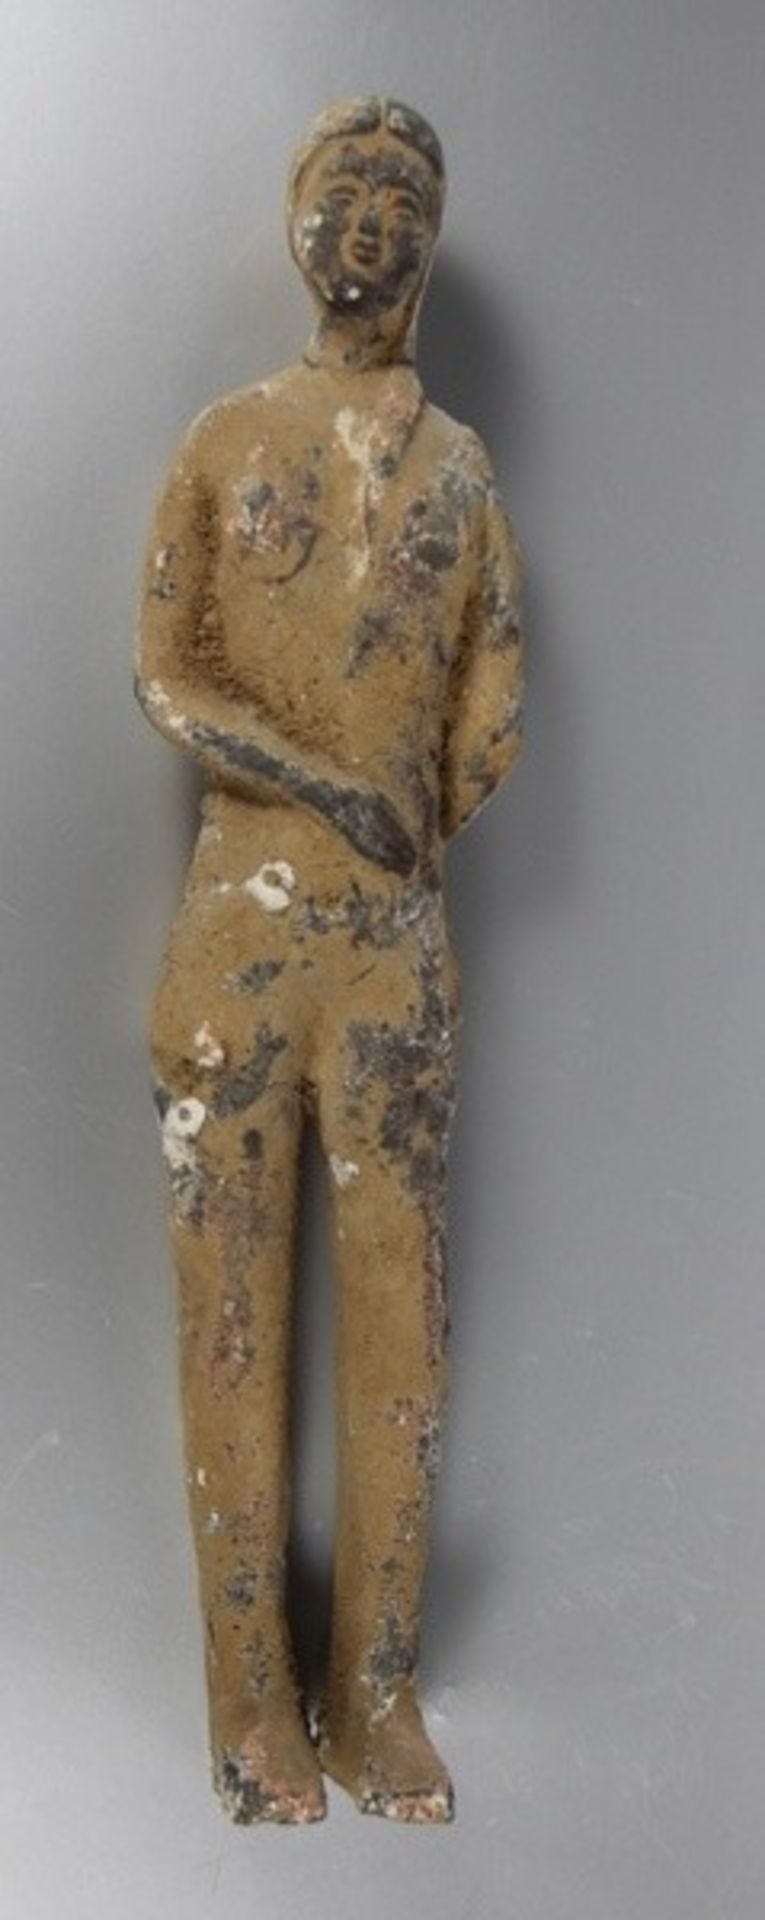 chinesische Terracotta-Figurinewomöglich Han-Dynastie?, China, terracotta-Figur einer stehenden